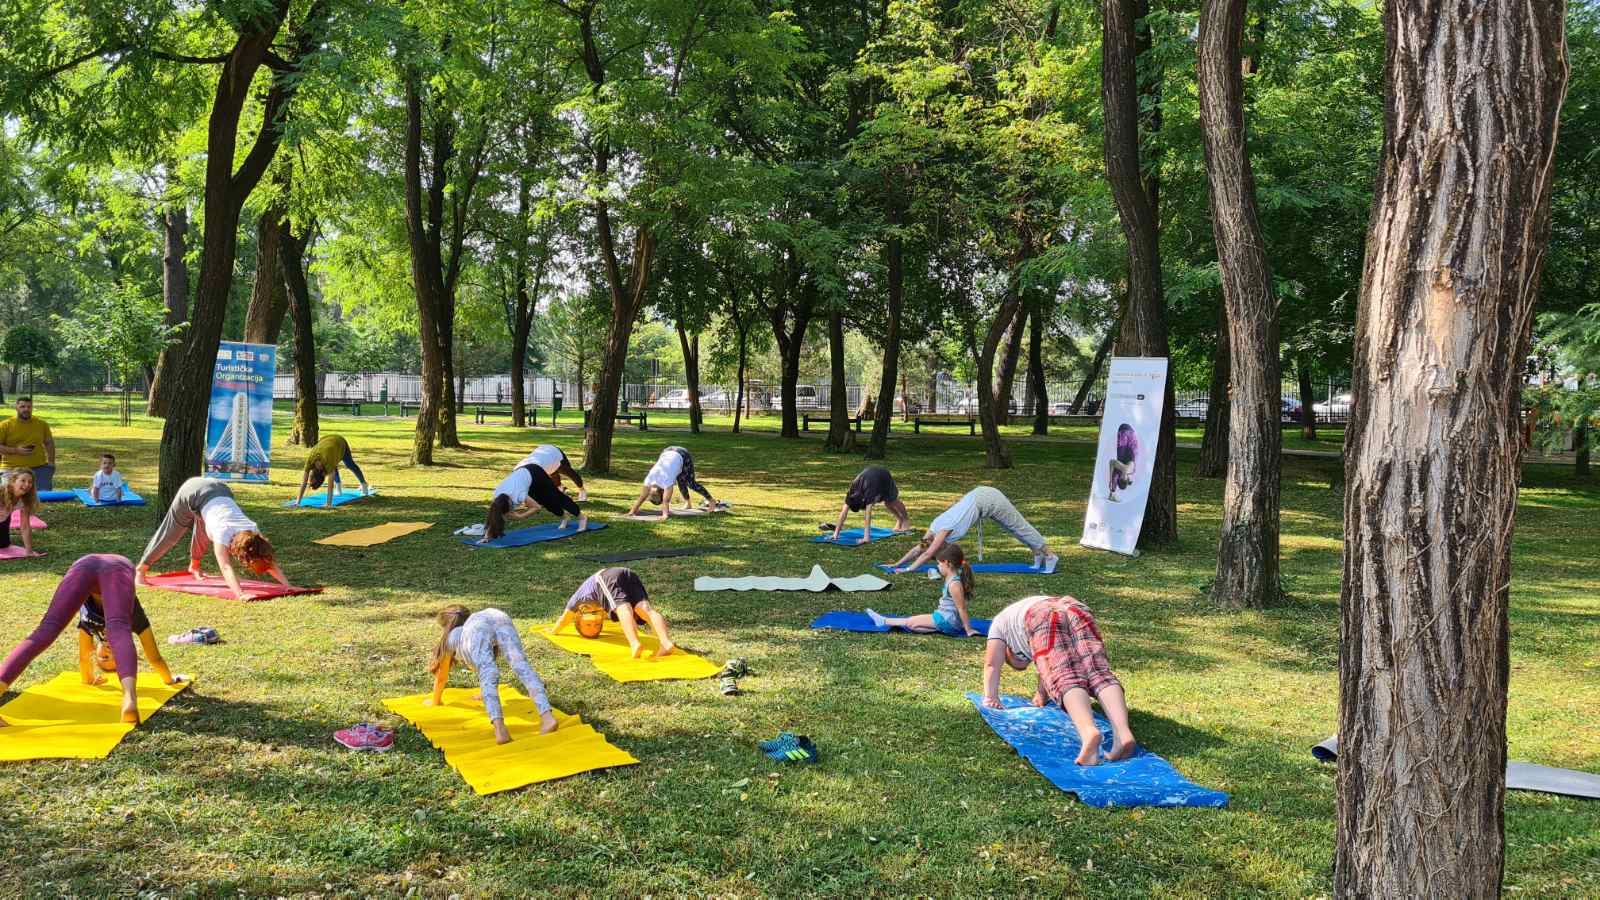 Turistička organizacija Podgorice manifestacijom "Joga u prirodi" obilježava 21.jun - Međunarodni dan joge